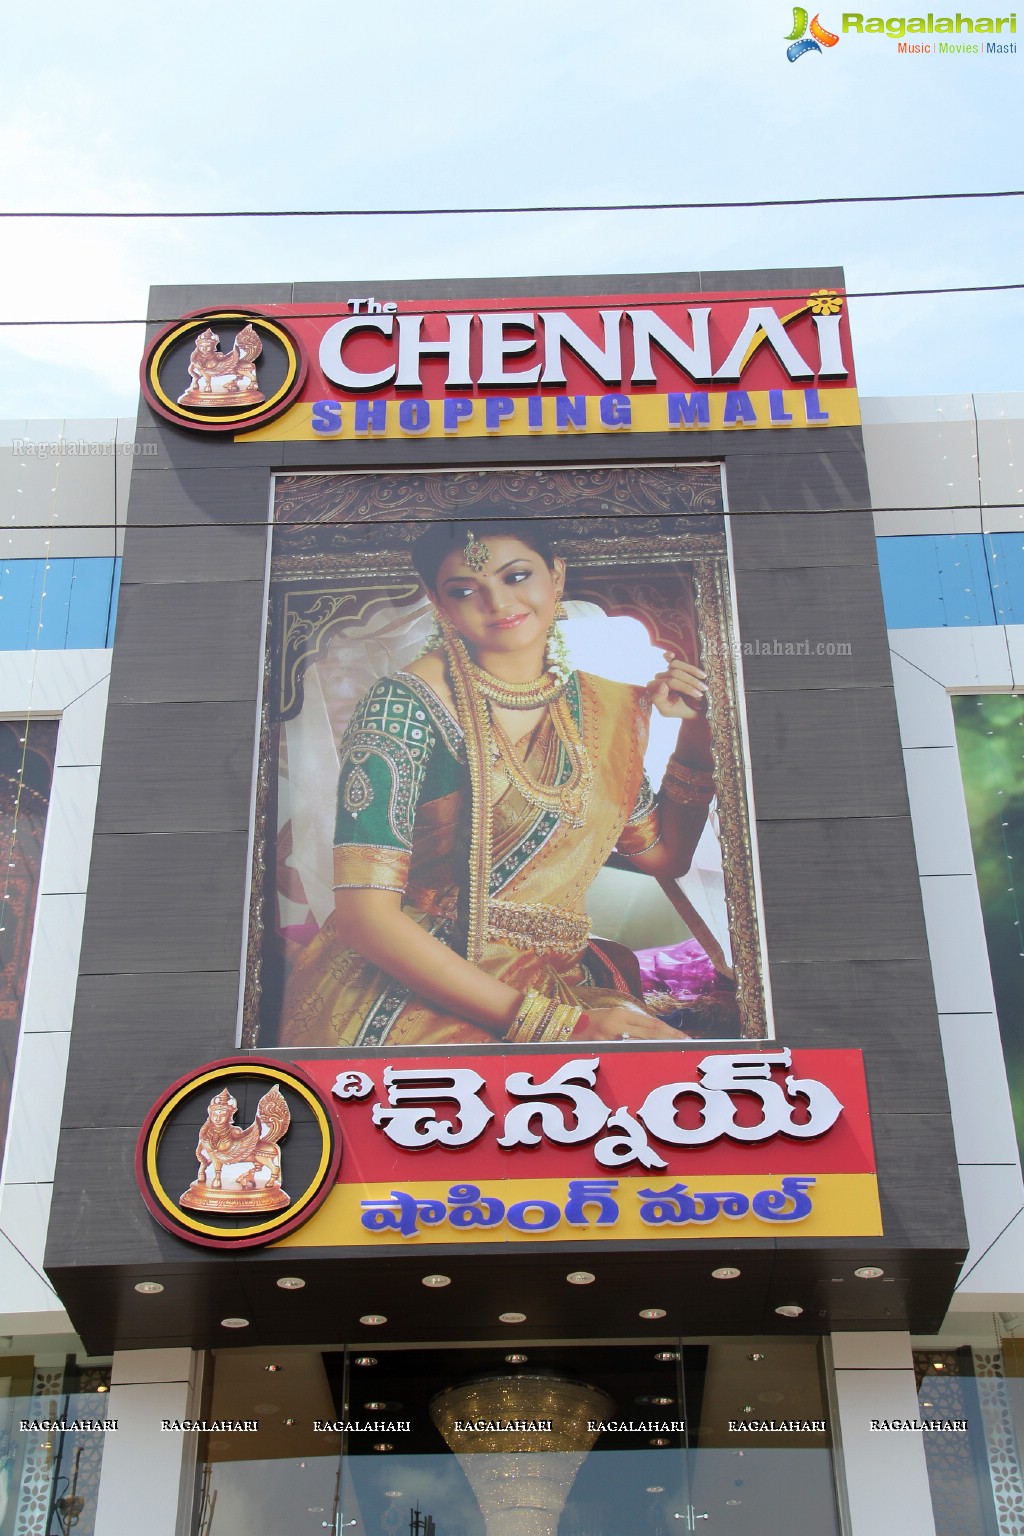 Kajal inaugurates Chennai Shopping Mall at AS Rao Nagar, Hyderabad